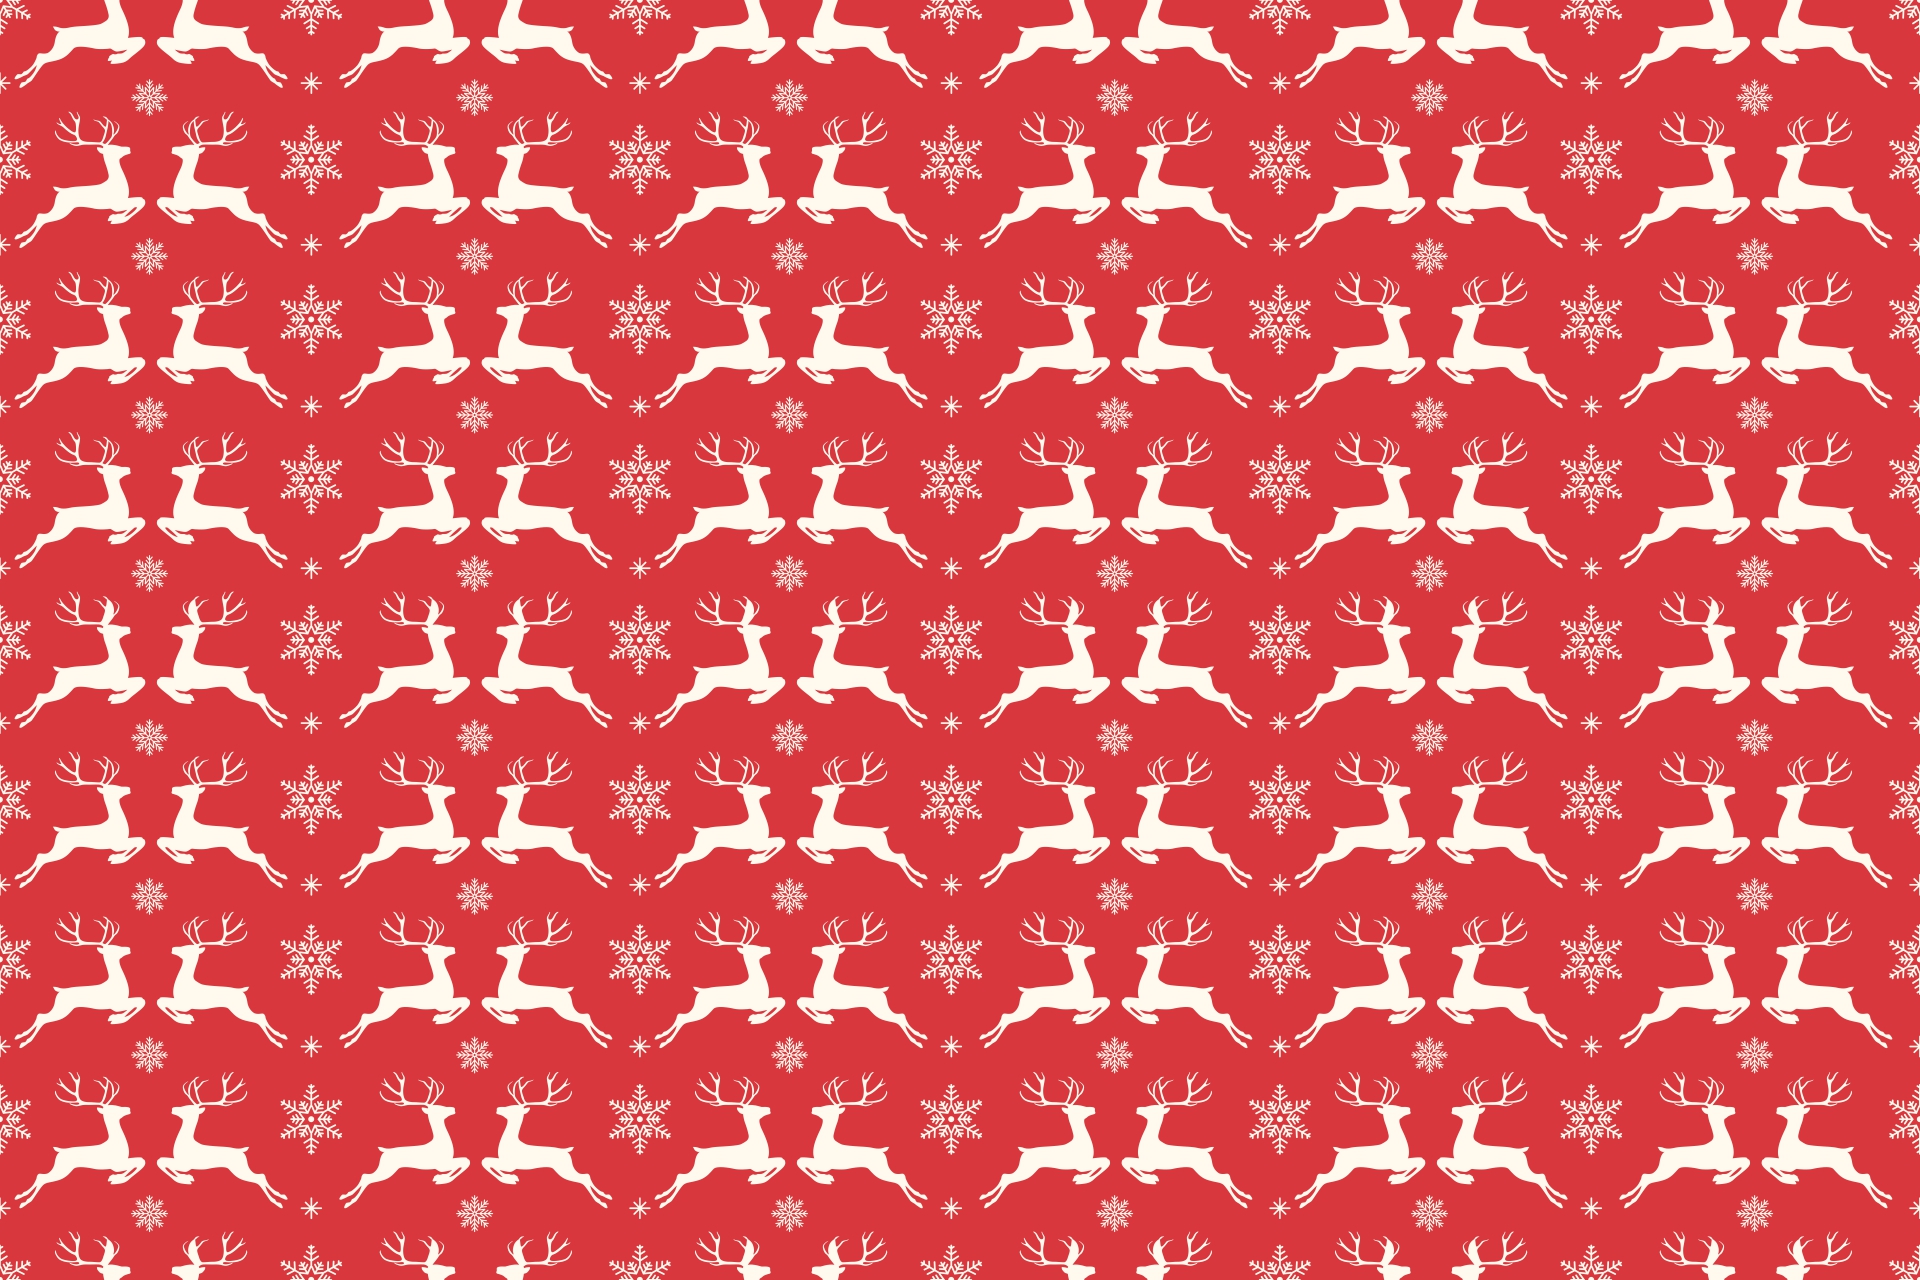 Christmas Reindeer Patterns